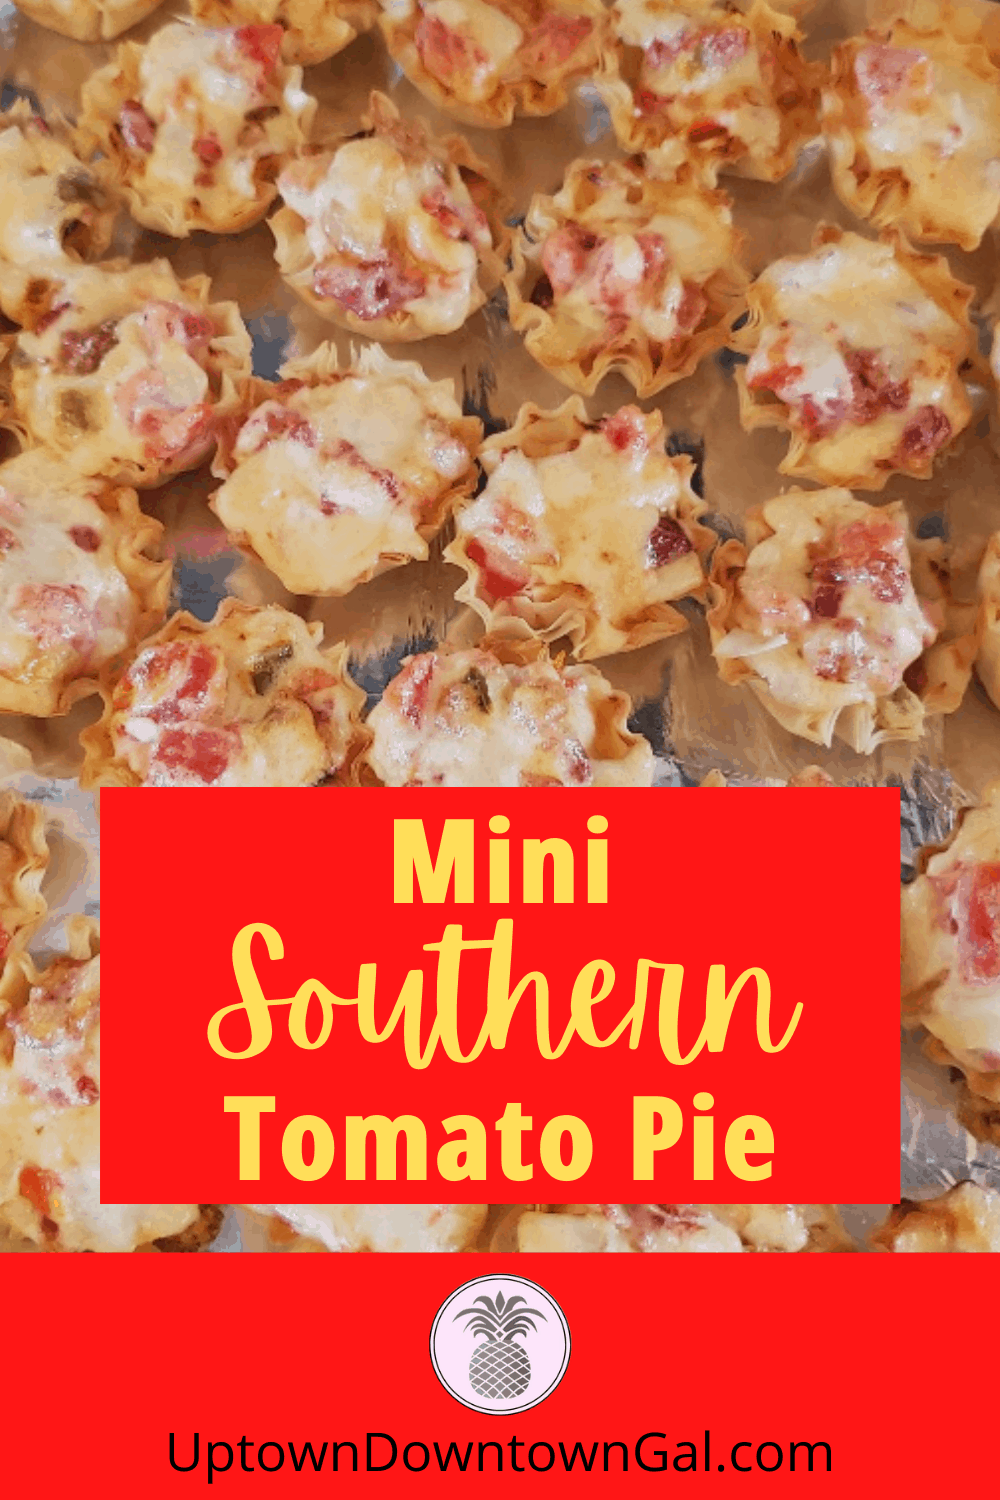 Mini Southern Tomato Pie - 2